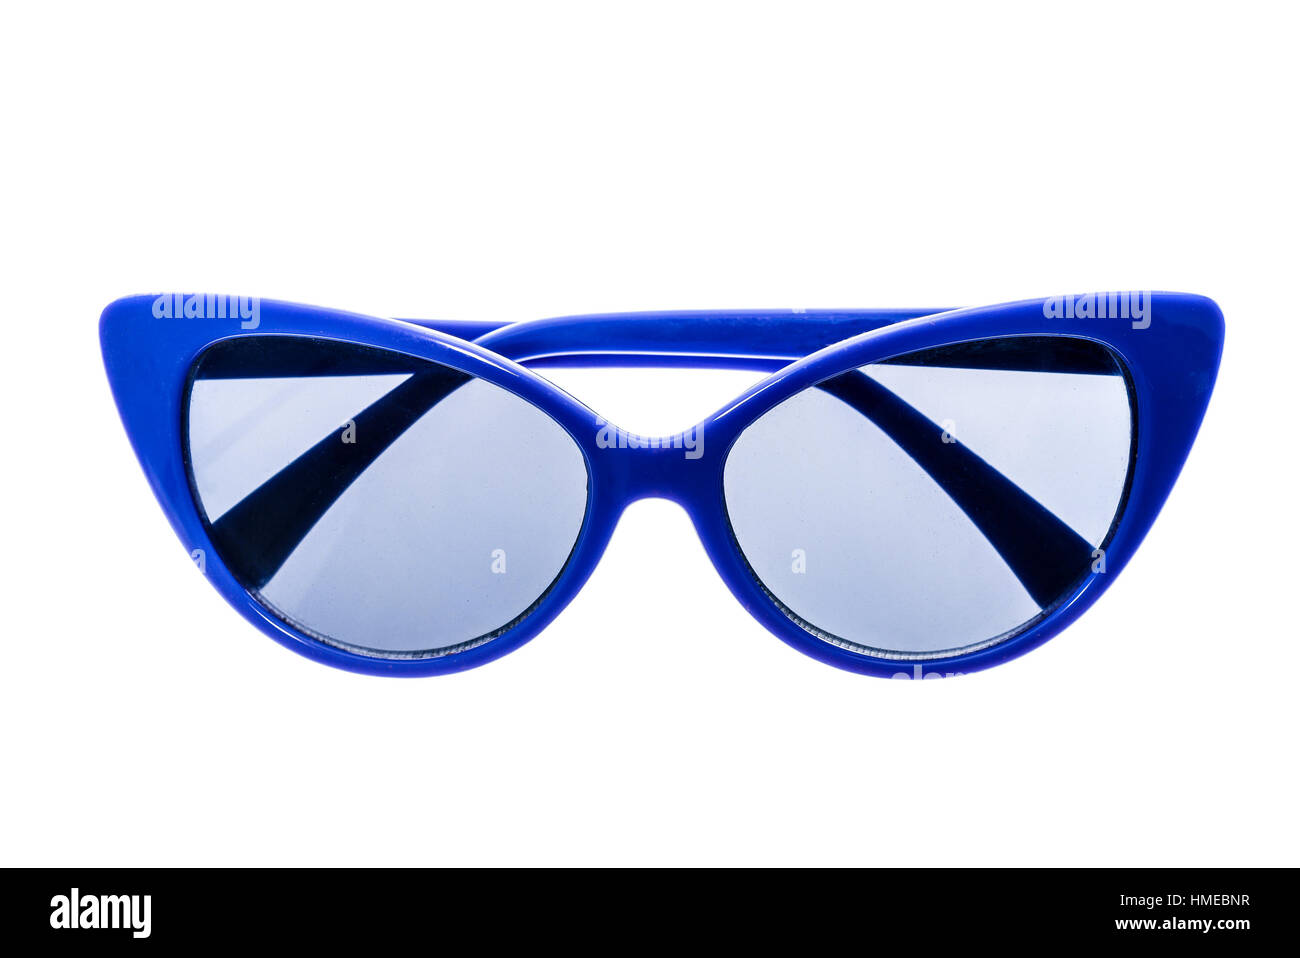 Blau Kinder Sonnenbrille, Sonnenschutz oder Brille isoliert auf weißem  Hintergrund. Farbe Kind Gläser Schutz vor Sonne und UV-Strahlen. Konzept  von Sun p Stockfotografie - Alamy